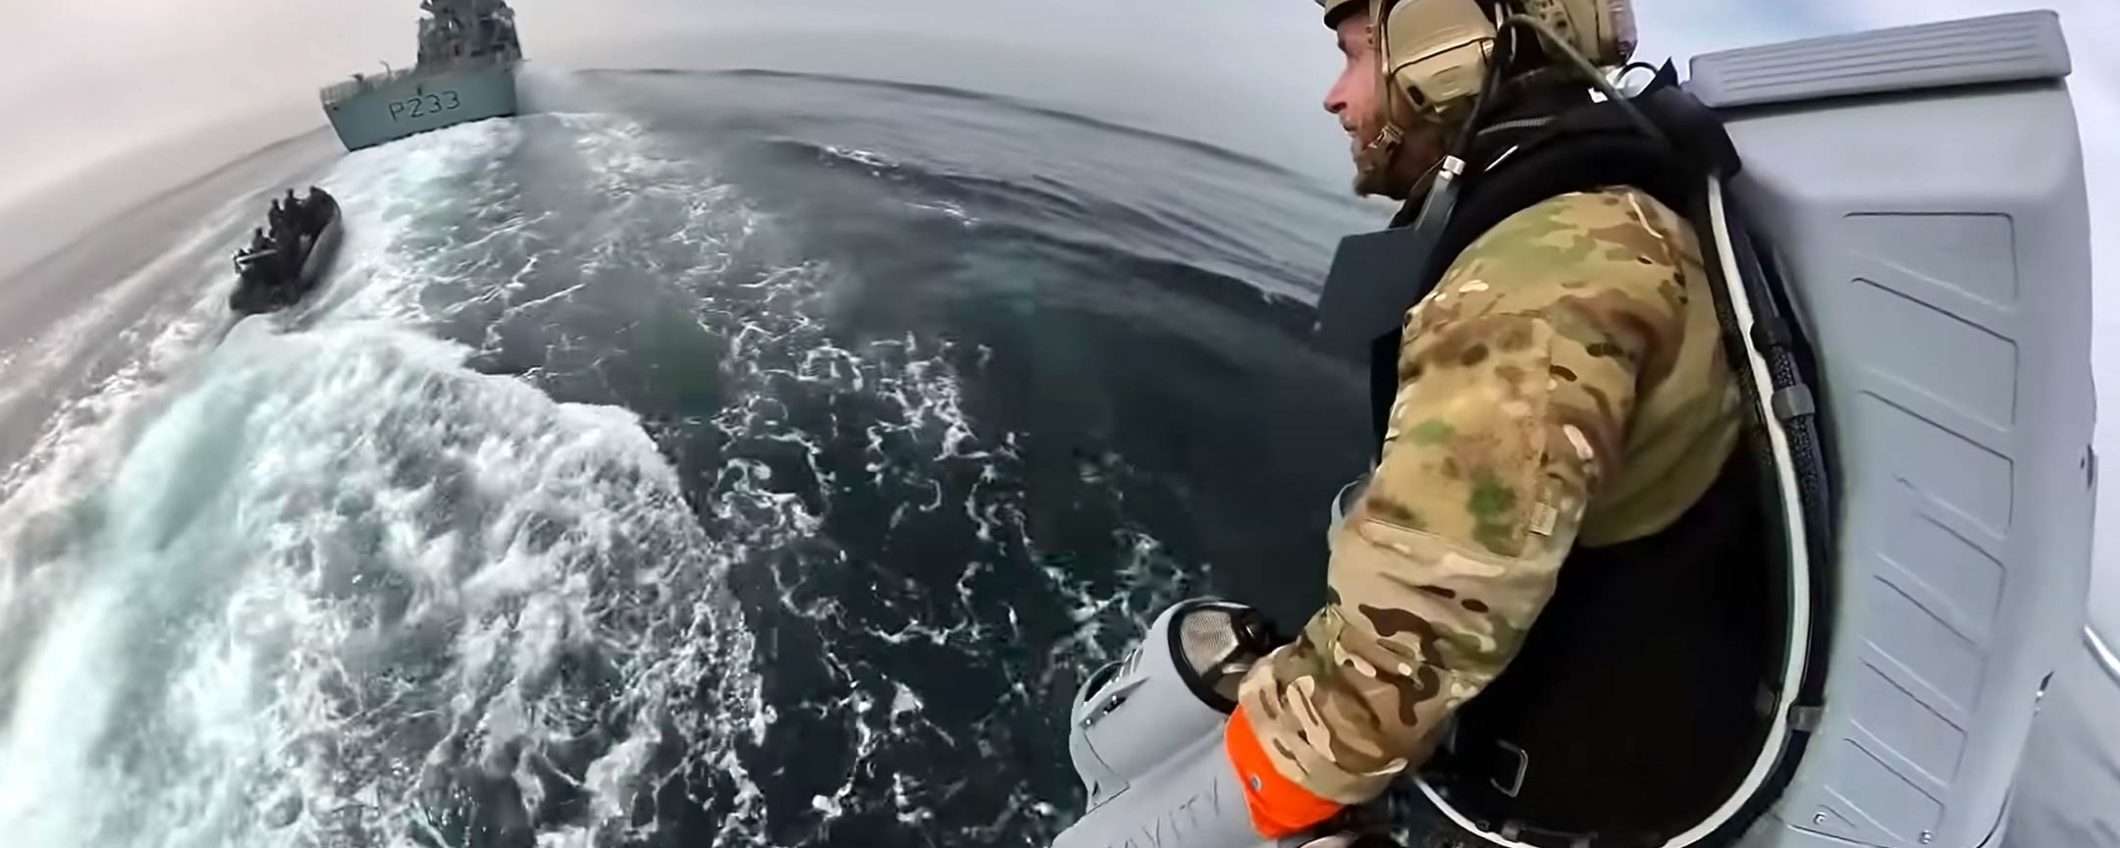 Guarda come vola il jet pack dei Royal Marine: video